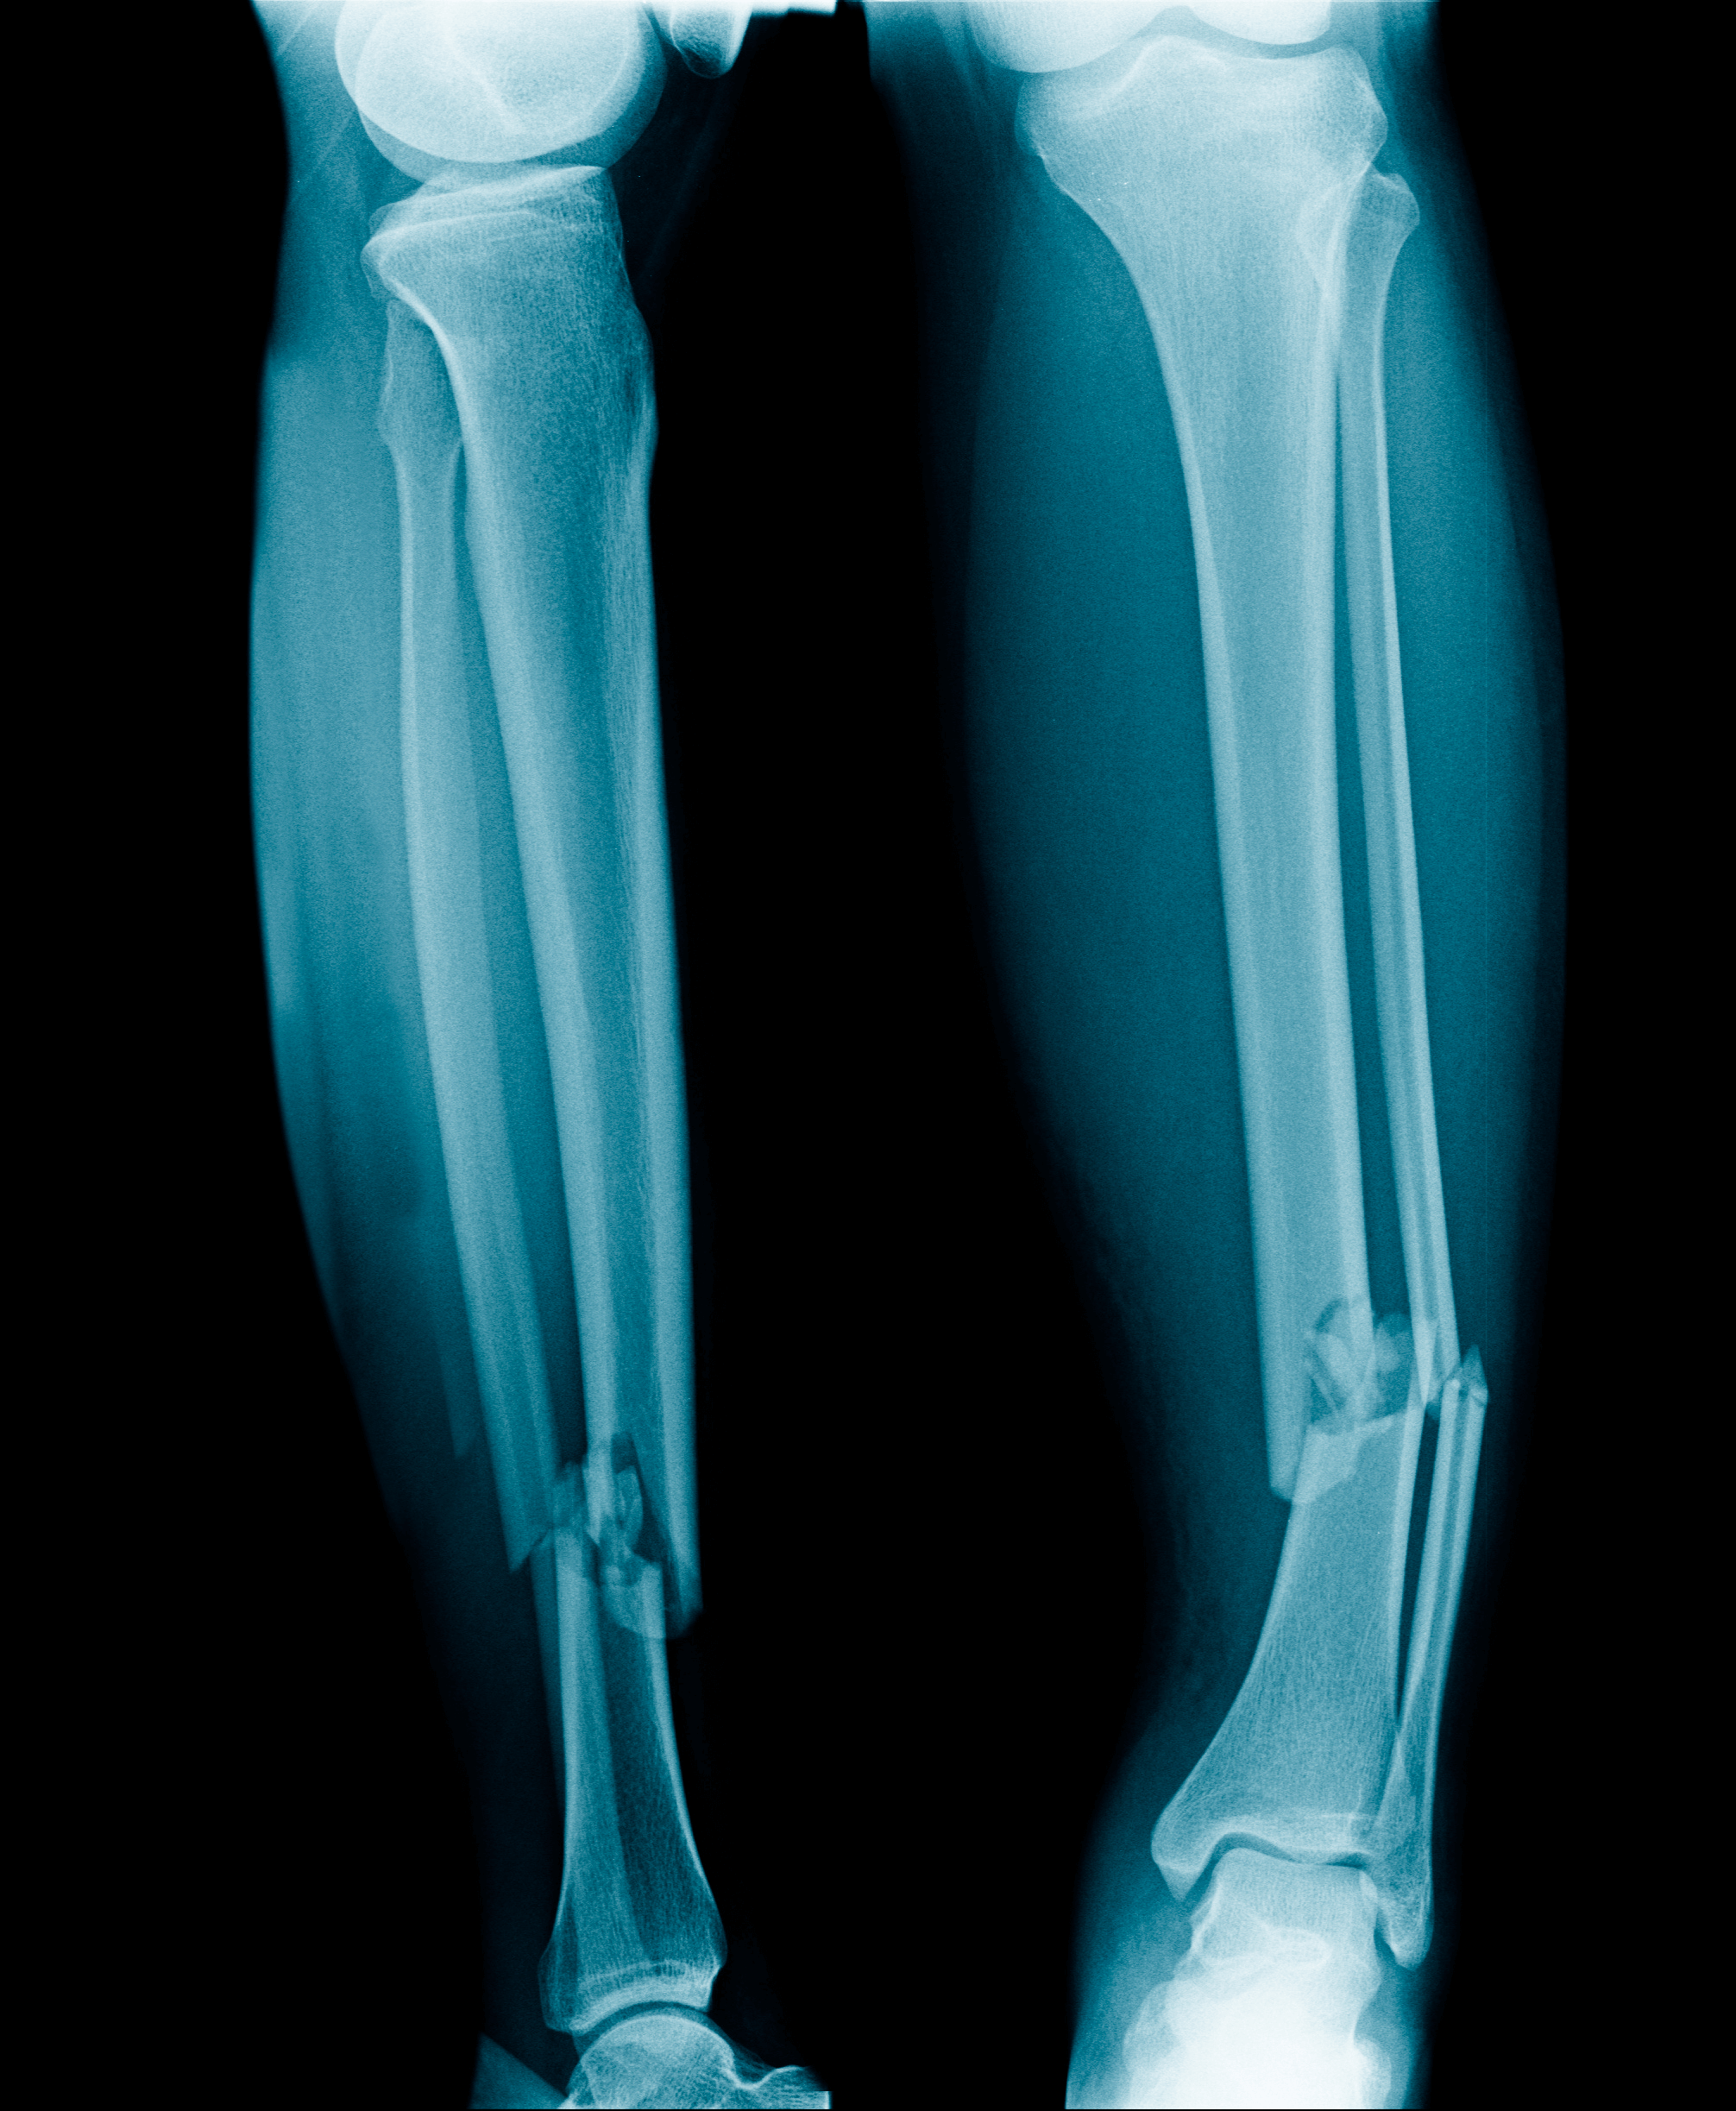 Chụp X-quang cẳng chân